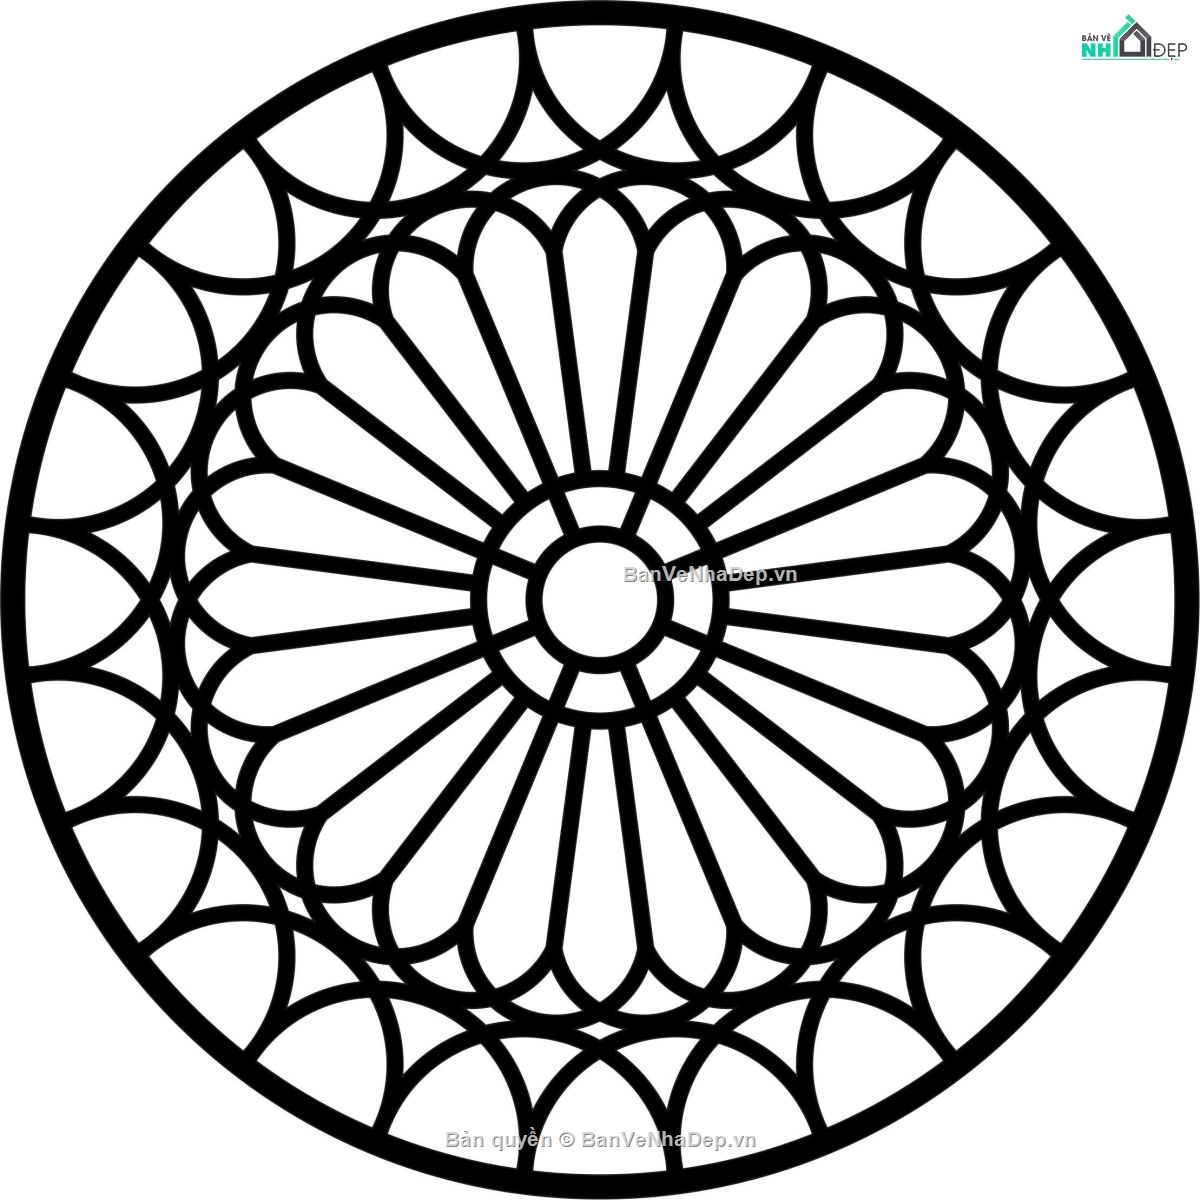 Vẽ hình tròn có bán kính r  2cm